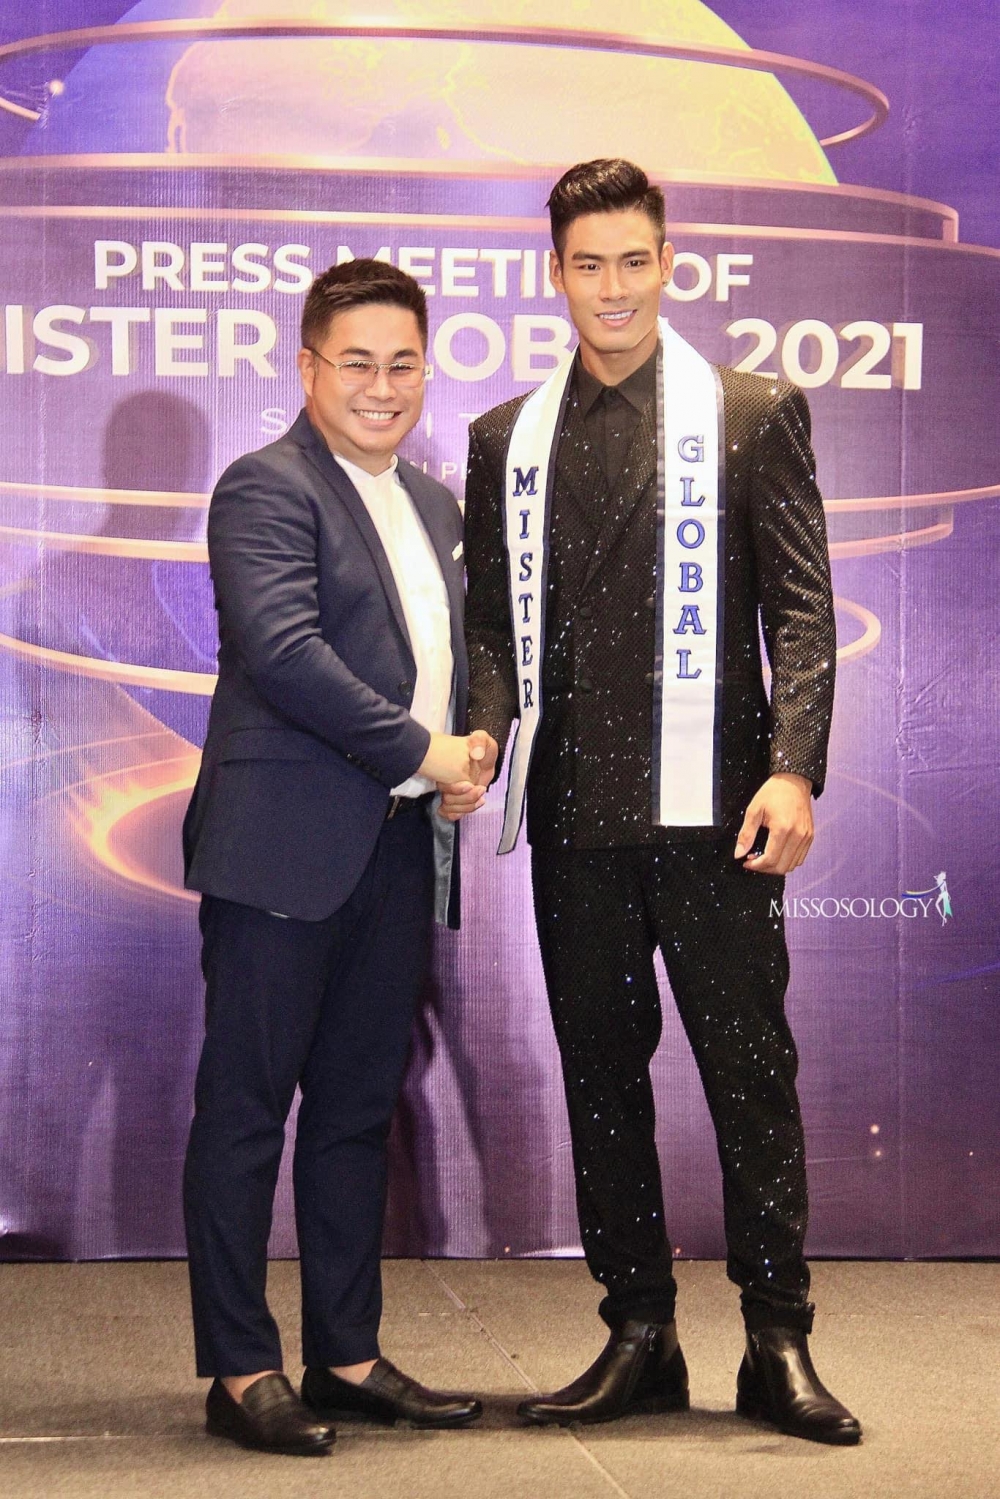 Danh Chiếu Linh bất ngờ được bổ nhiệm Nam vương Mister Global 2021